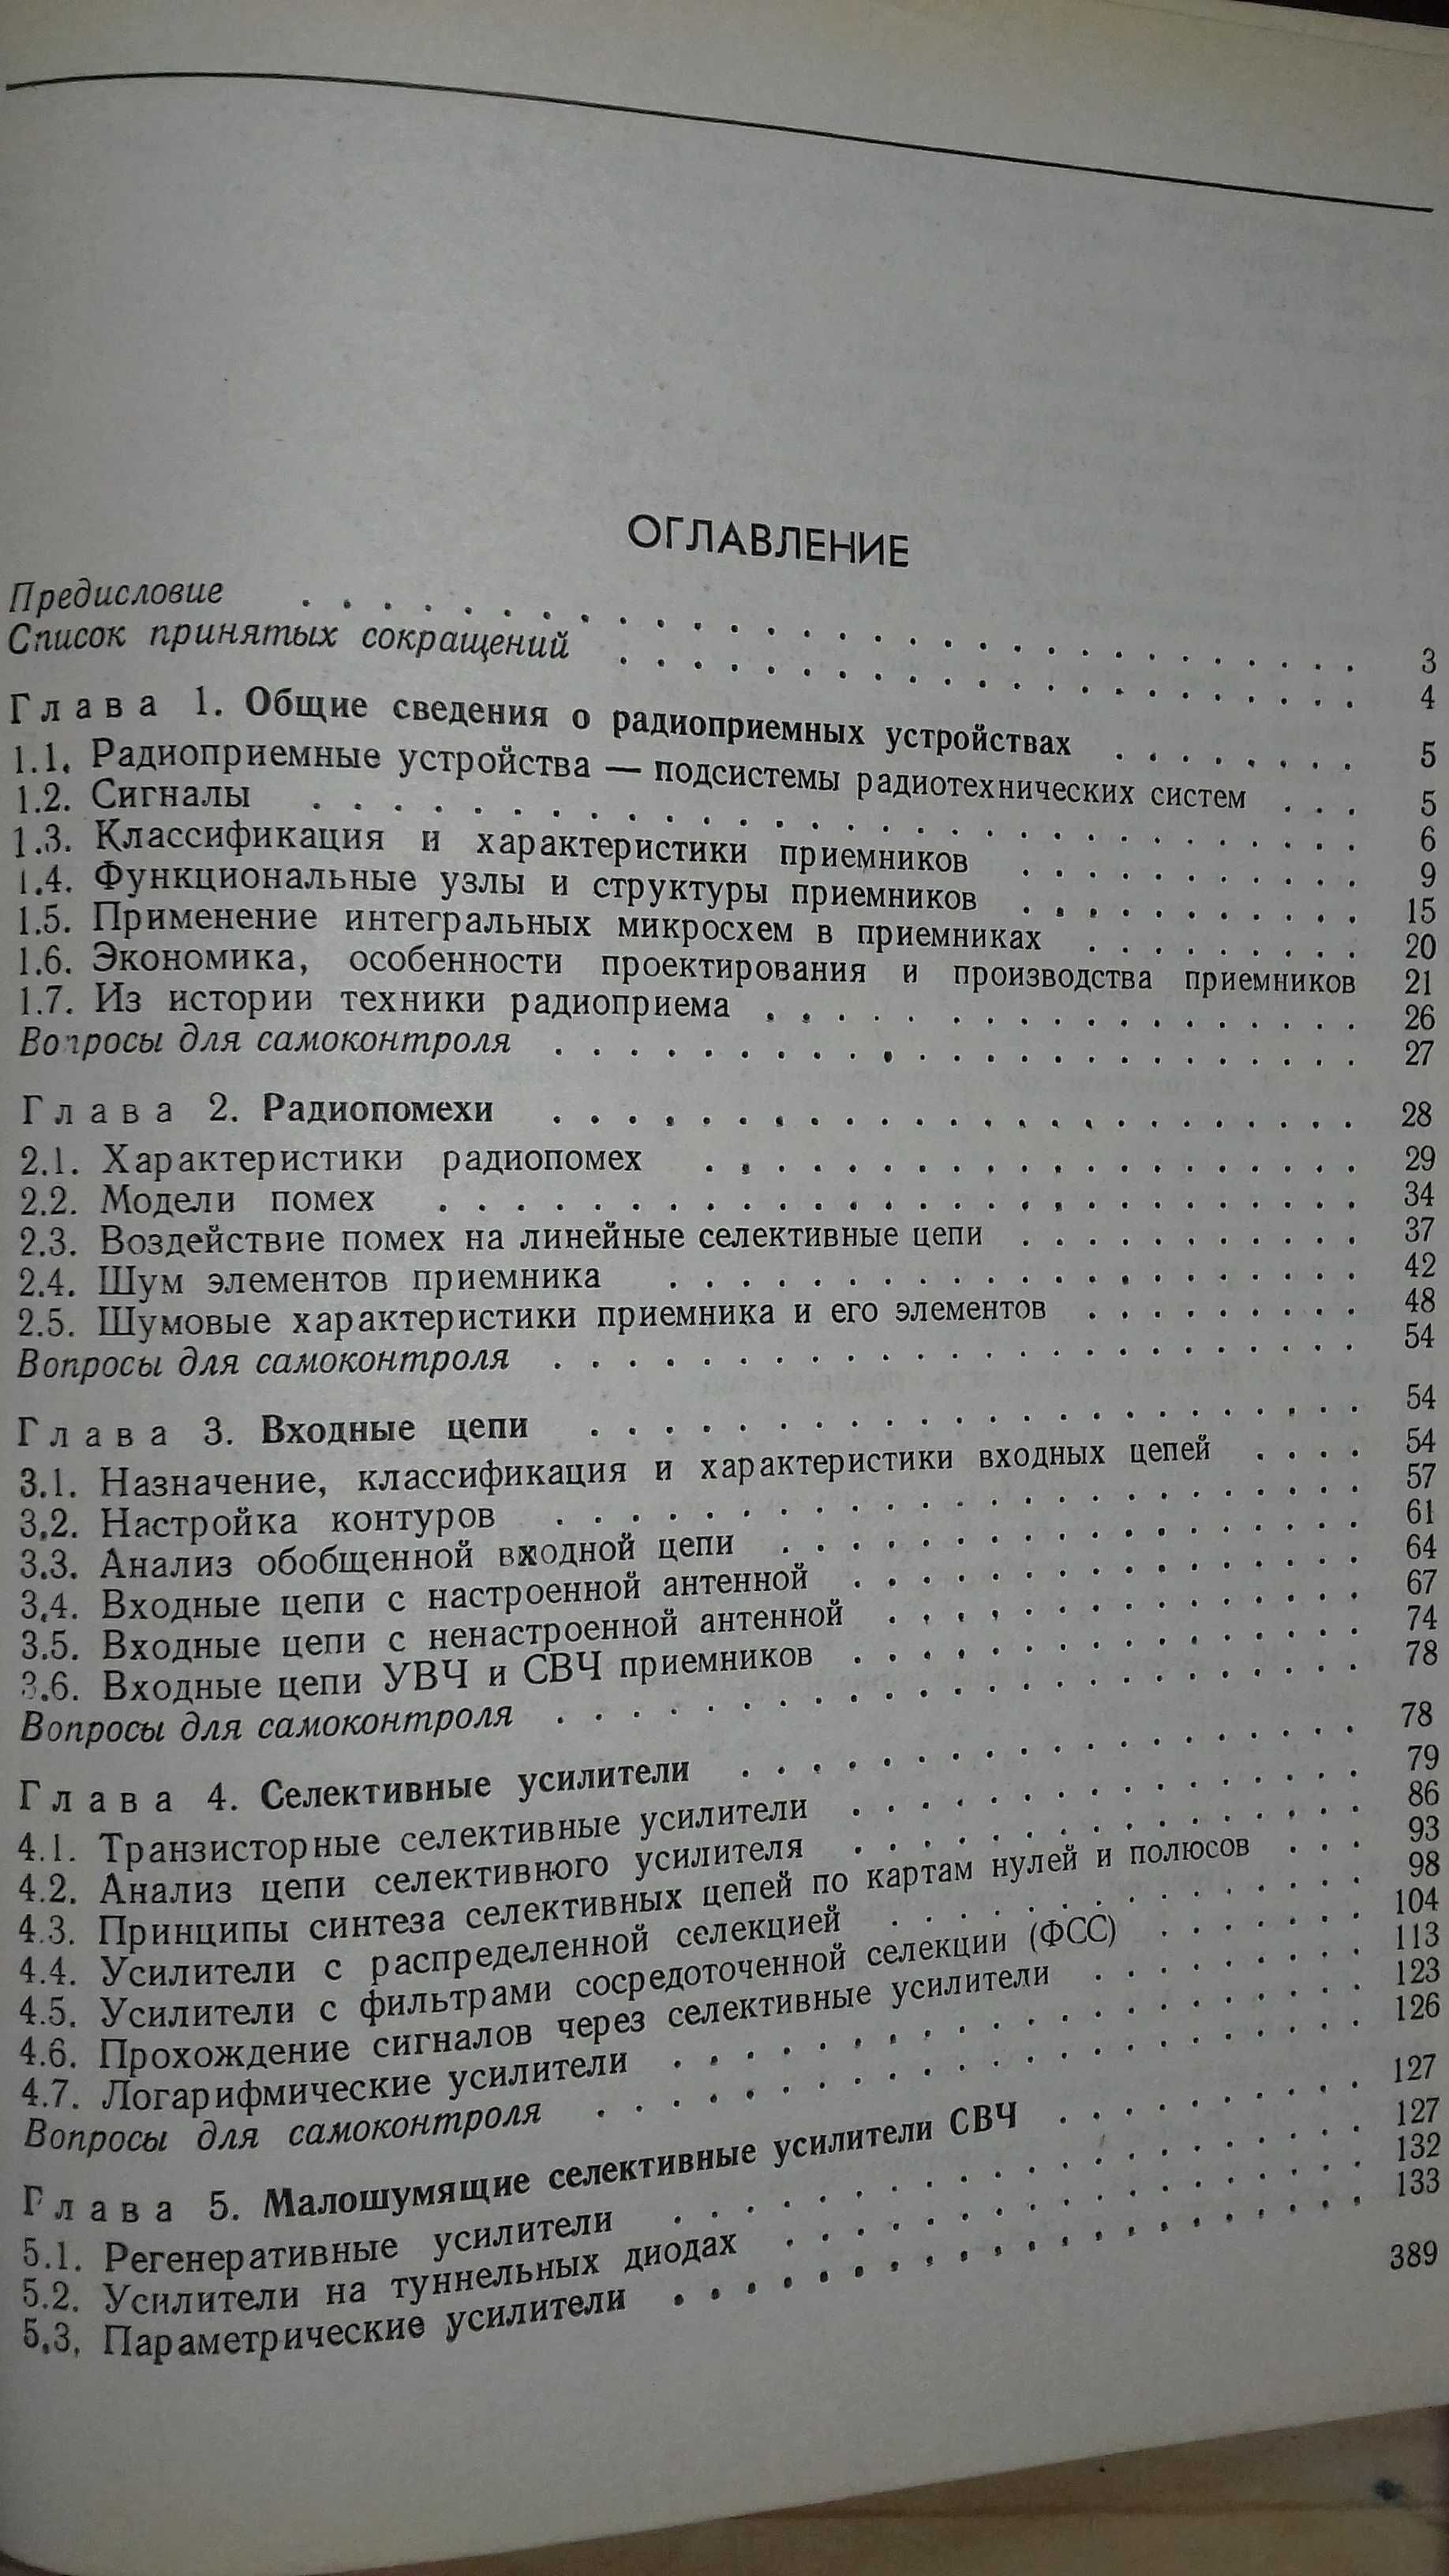 Воллернер Н.Ф. Радиоприемные устройства. 1993 г.